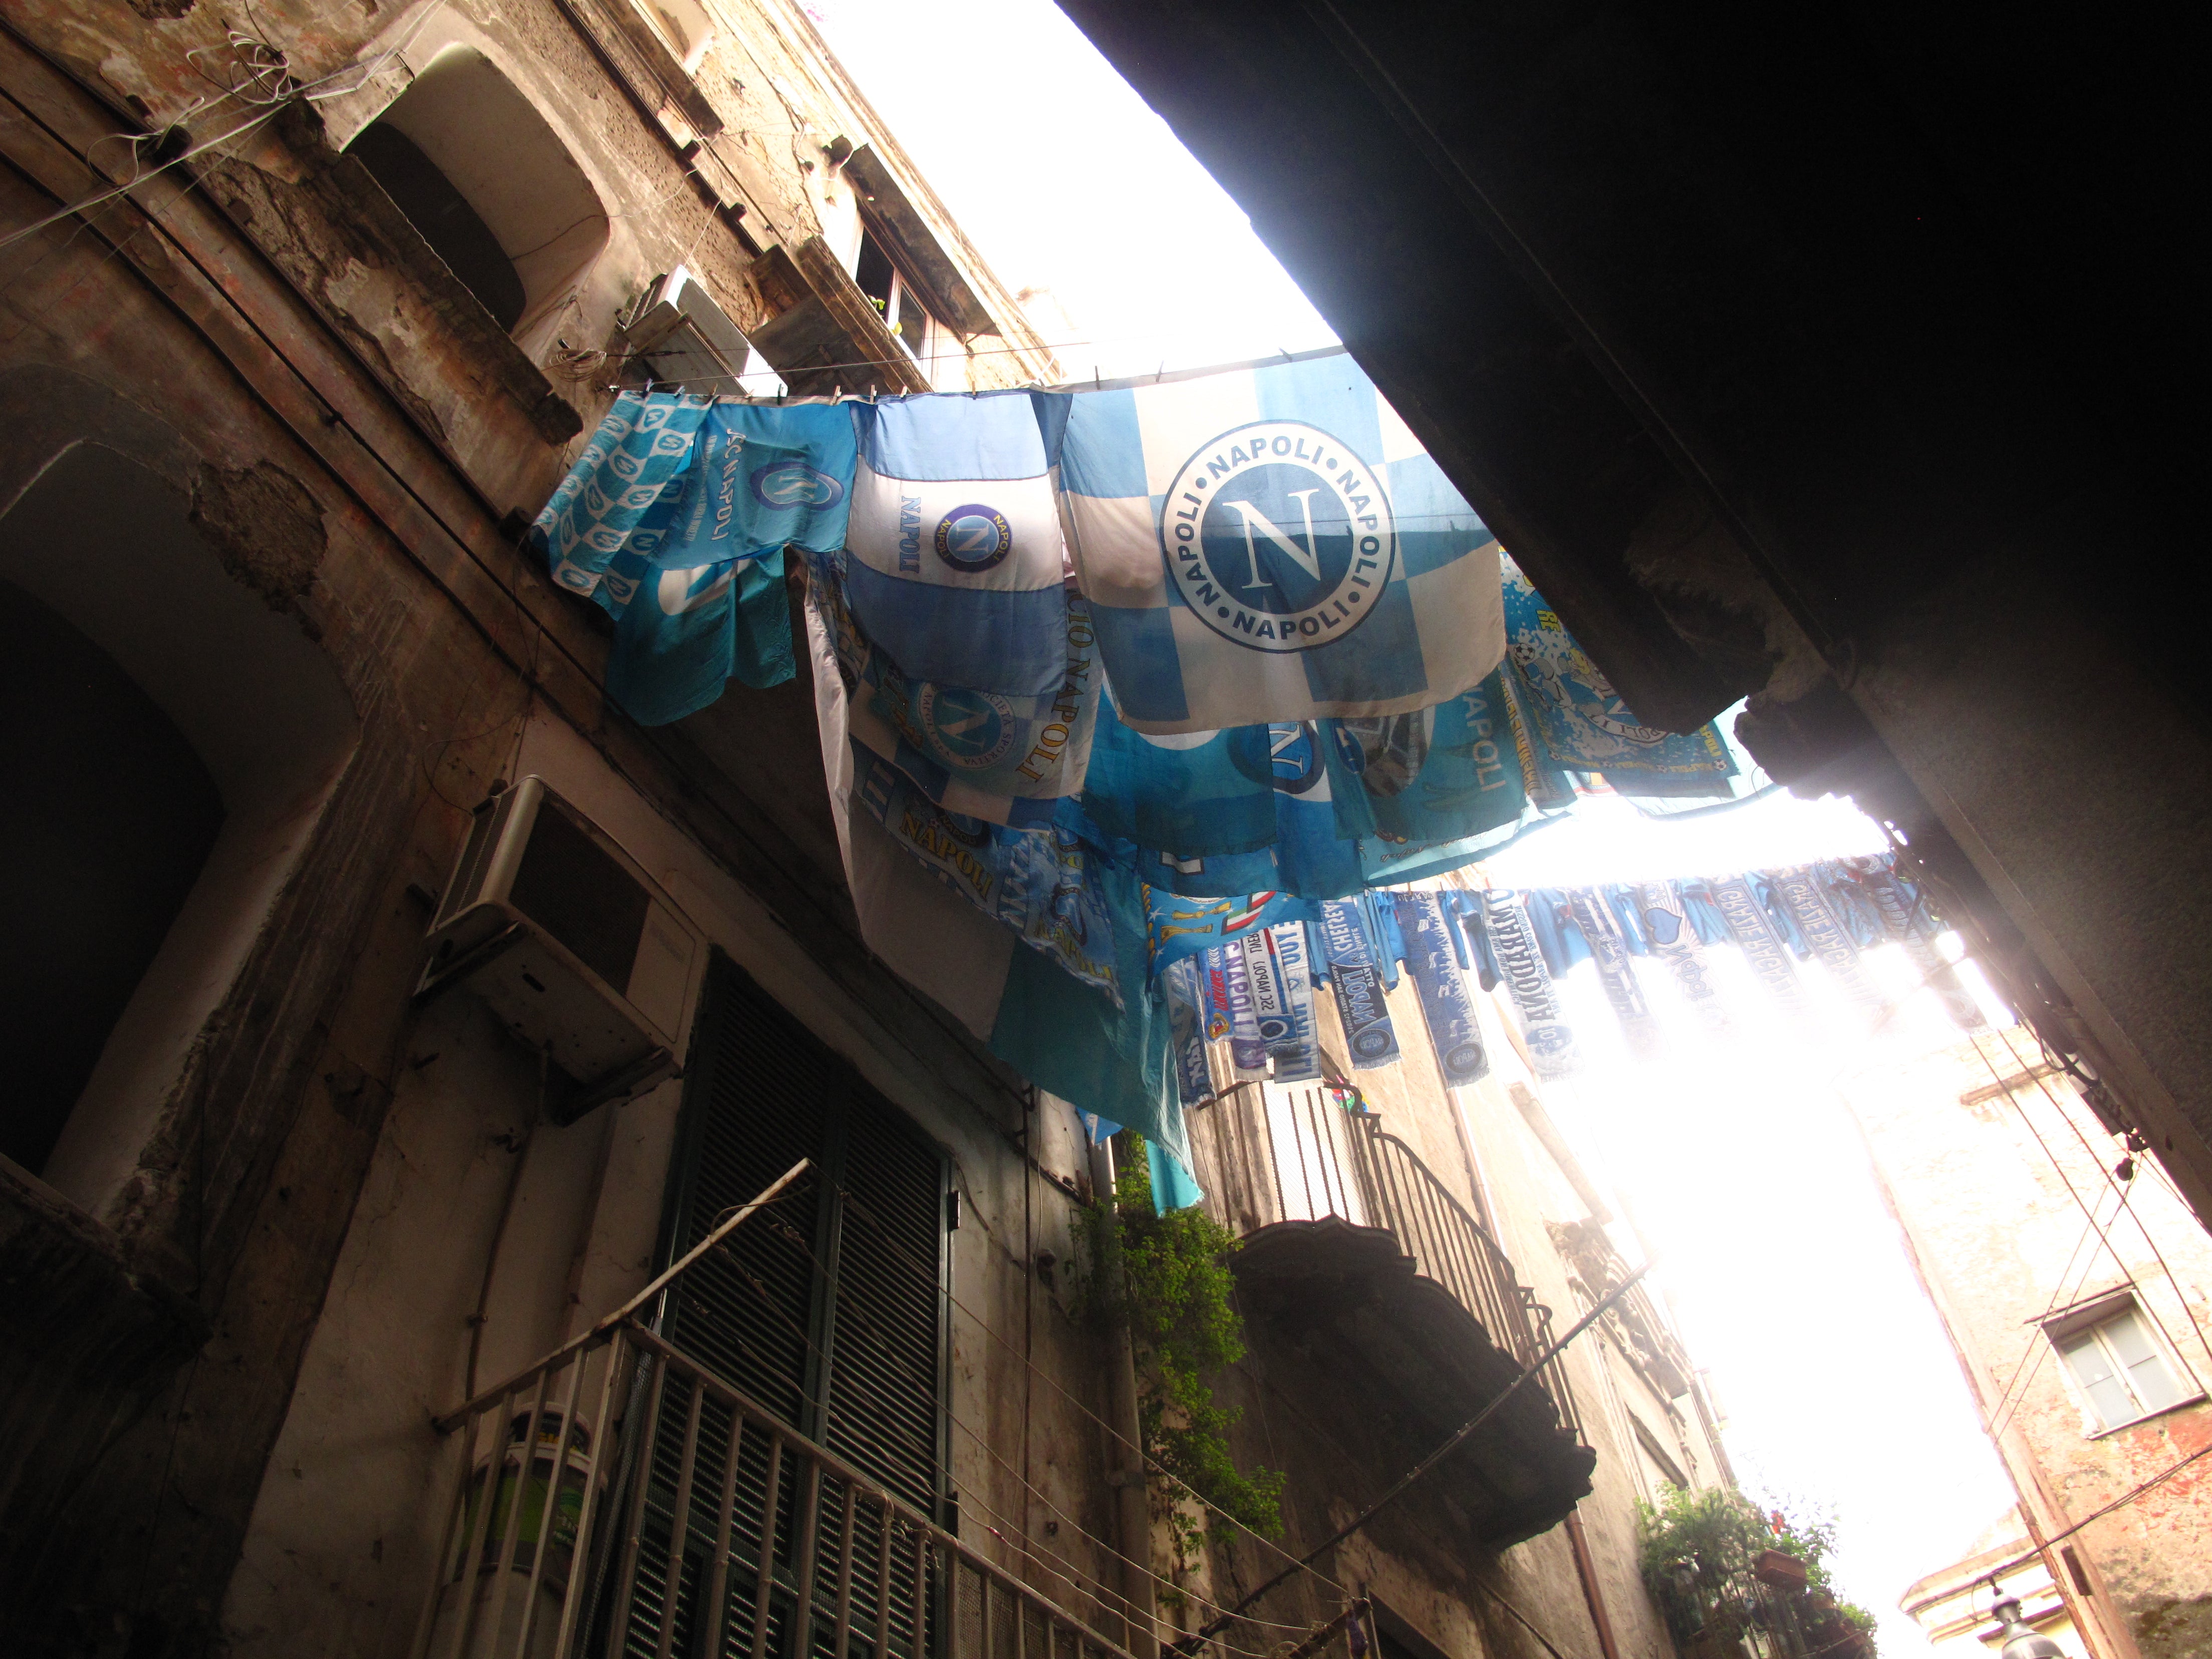 Napoli flags in the Quartieri Spagnoli